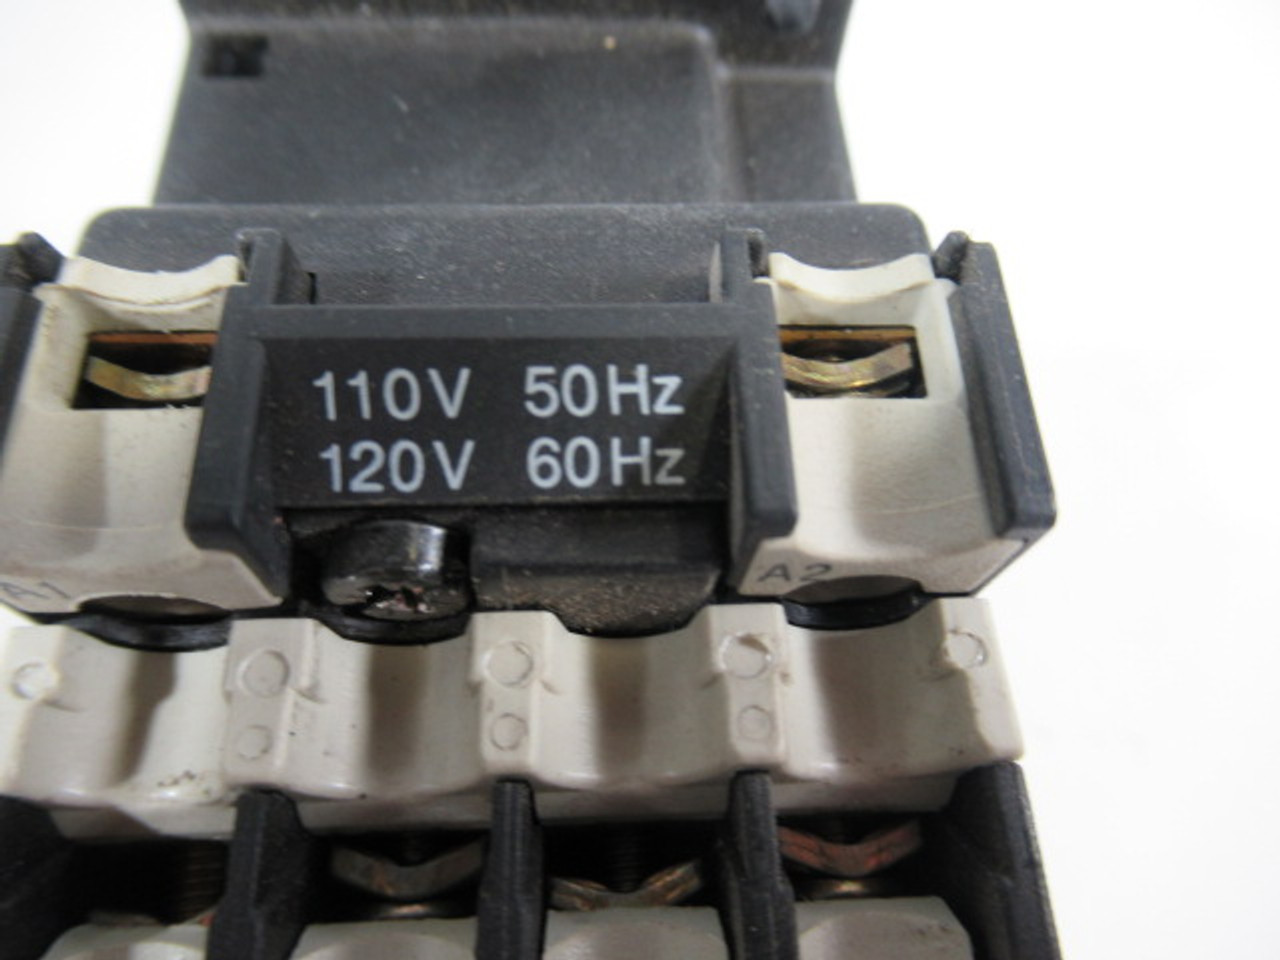 Klockner-Moeller DILR22 Contactor 500/600V 16A Coil 110/120V 50/60Hz USED